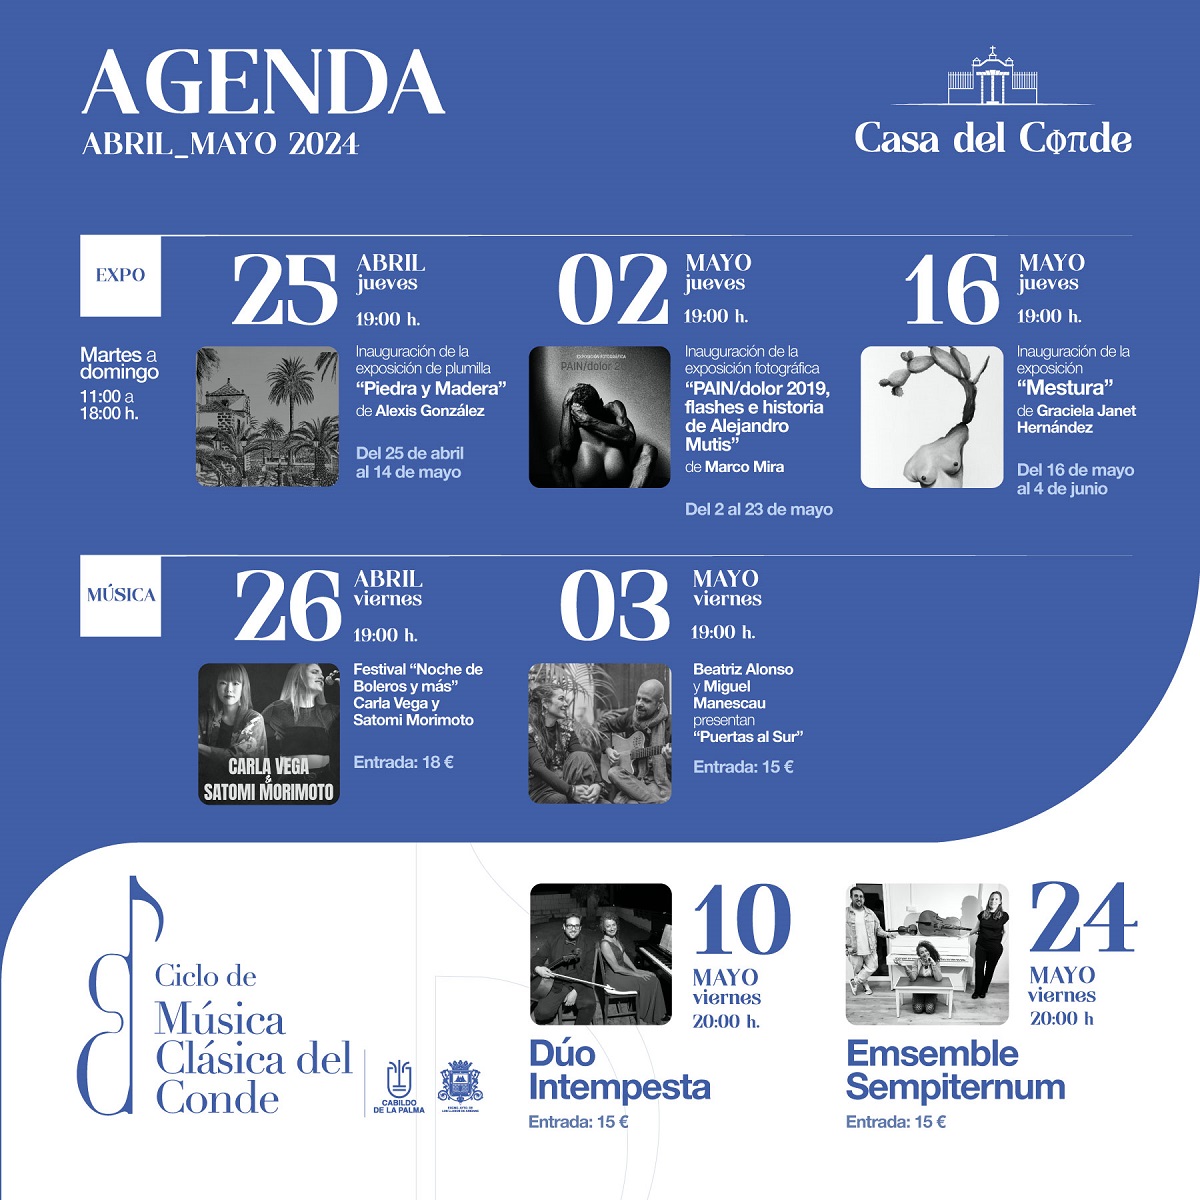 Agenda Cultural Casa del Conde - Los Llanos de Aridane